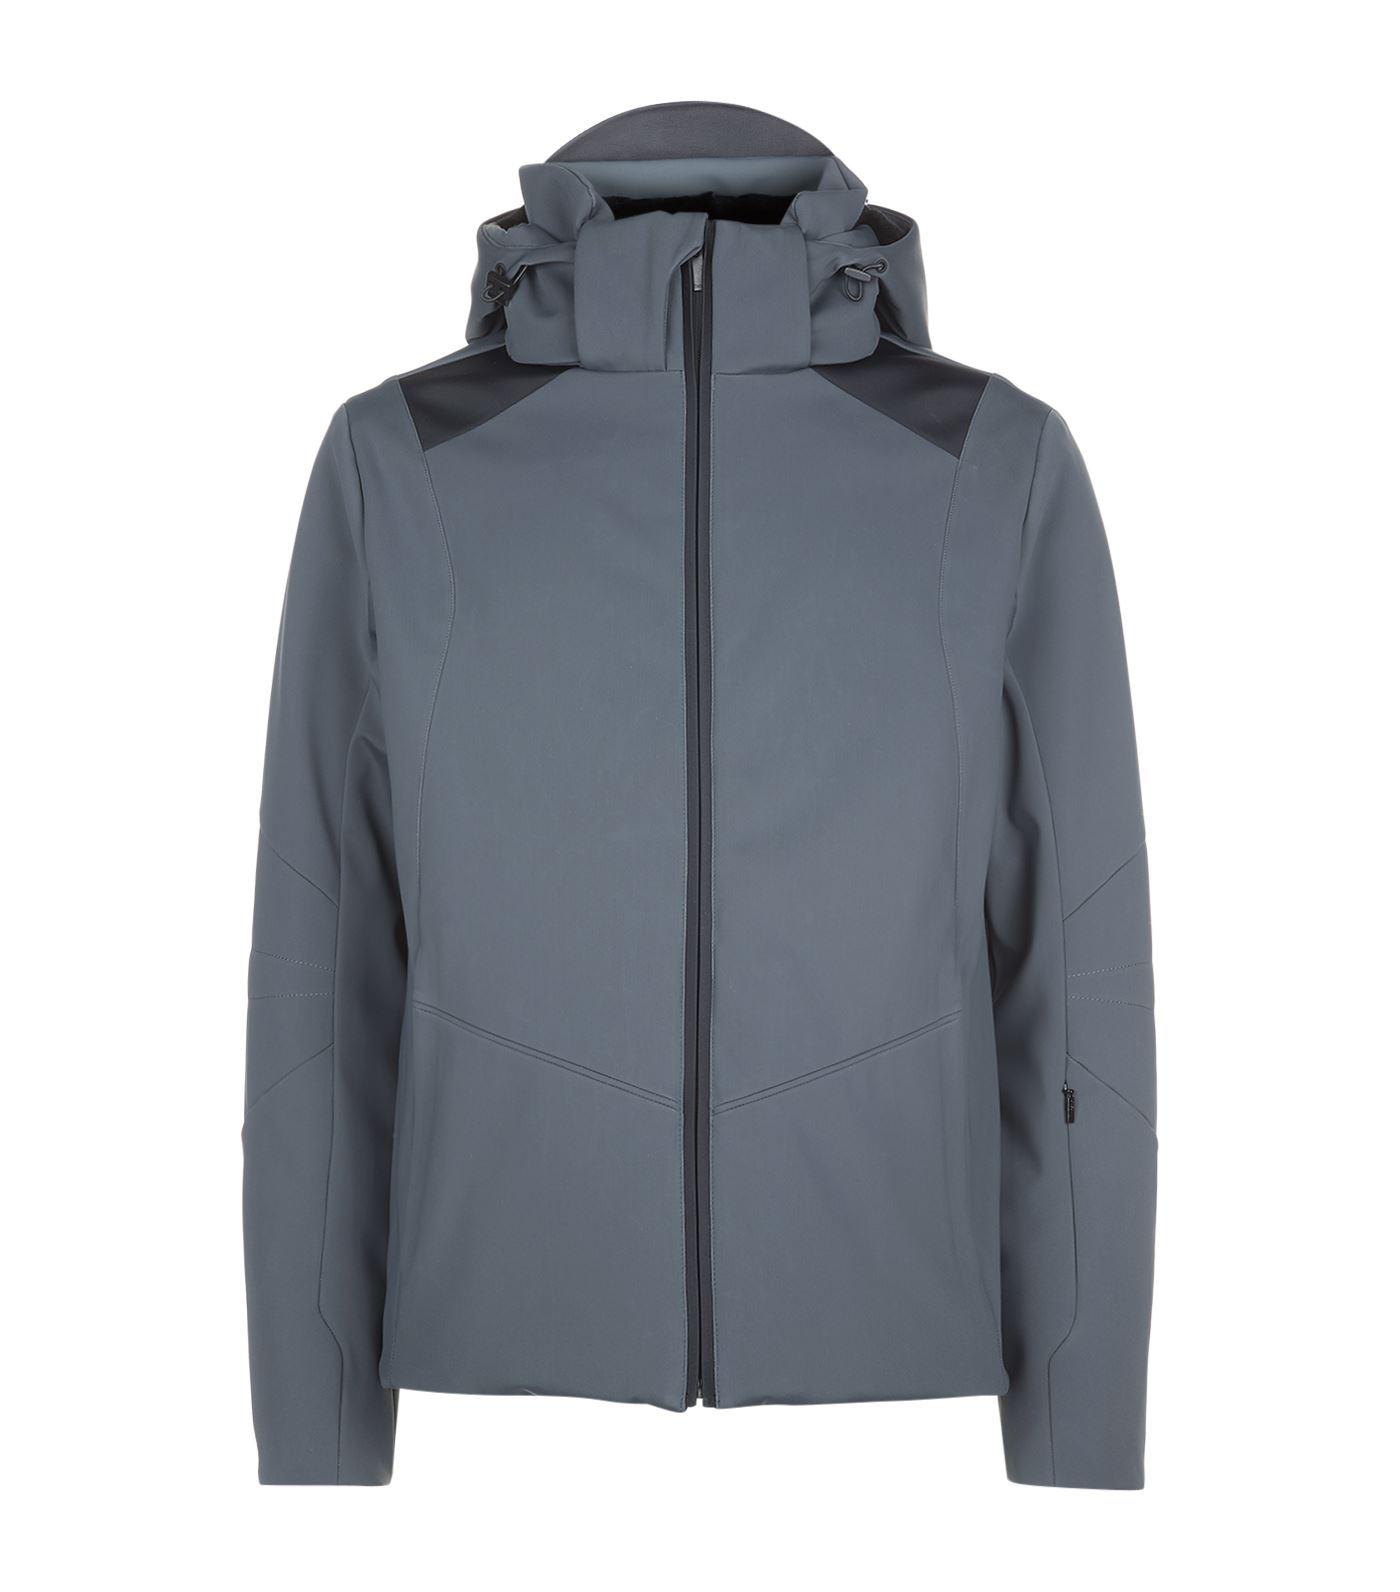 Fendi Fur Ski Monster Hooded Jacket in Grey (Gray) for Men - Lyst